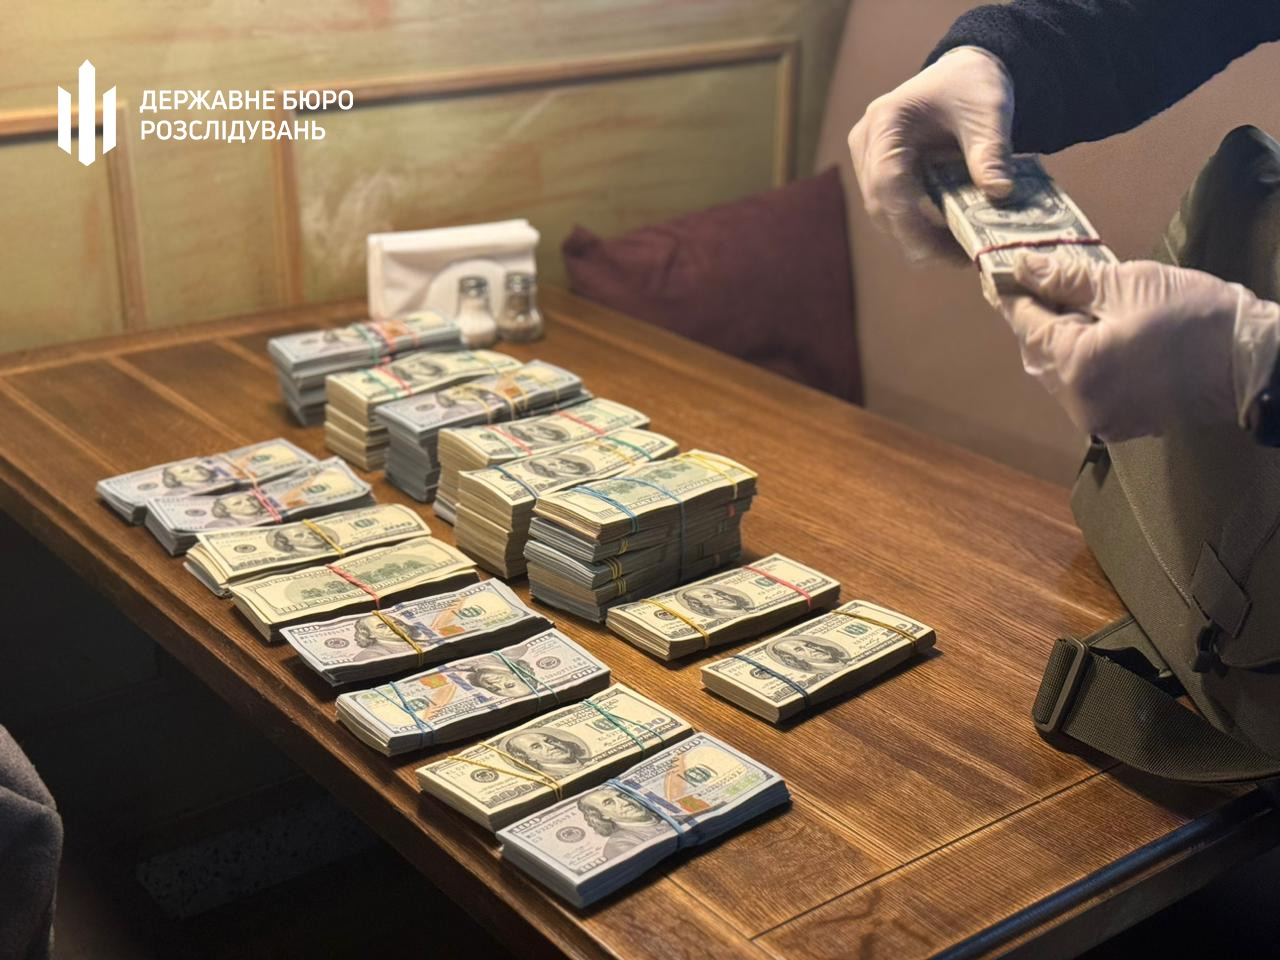 Львовский бизнесмен хотел за $500 тысяч подкупить руководство ГБР. Его арестовали – видео